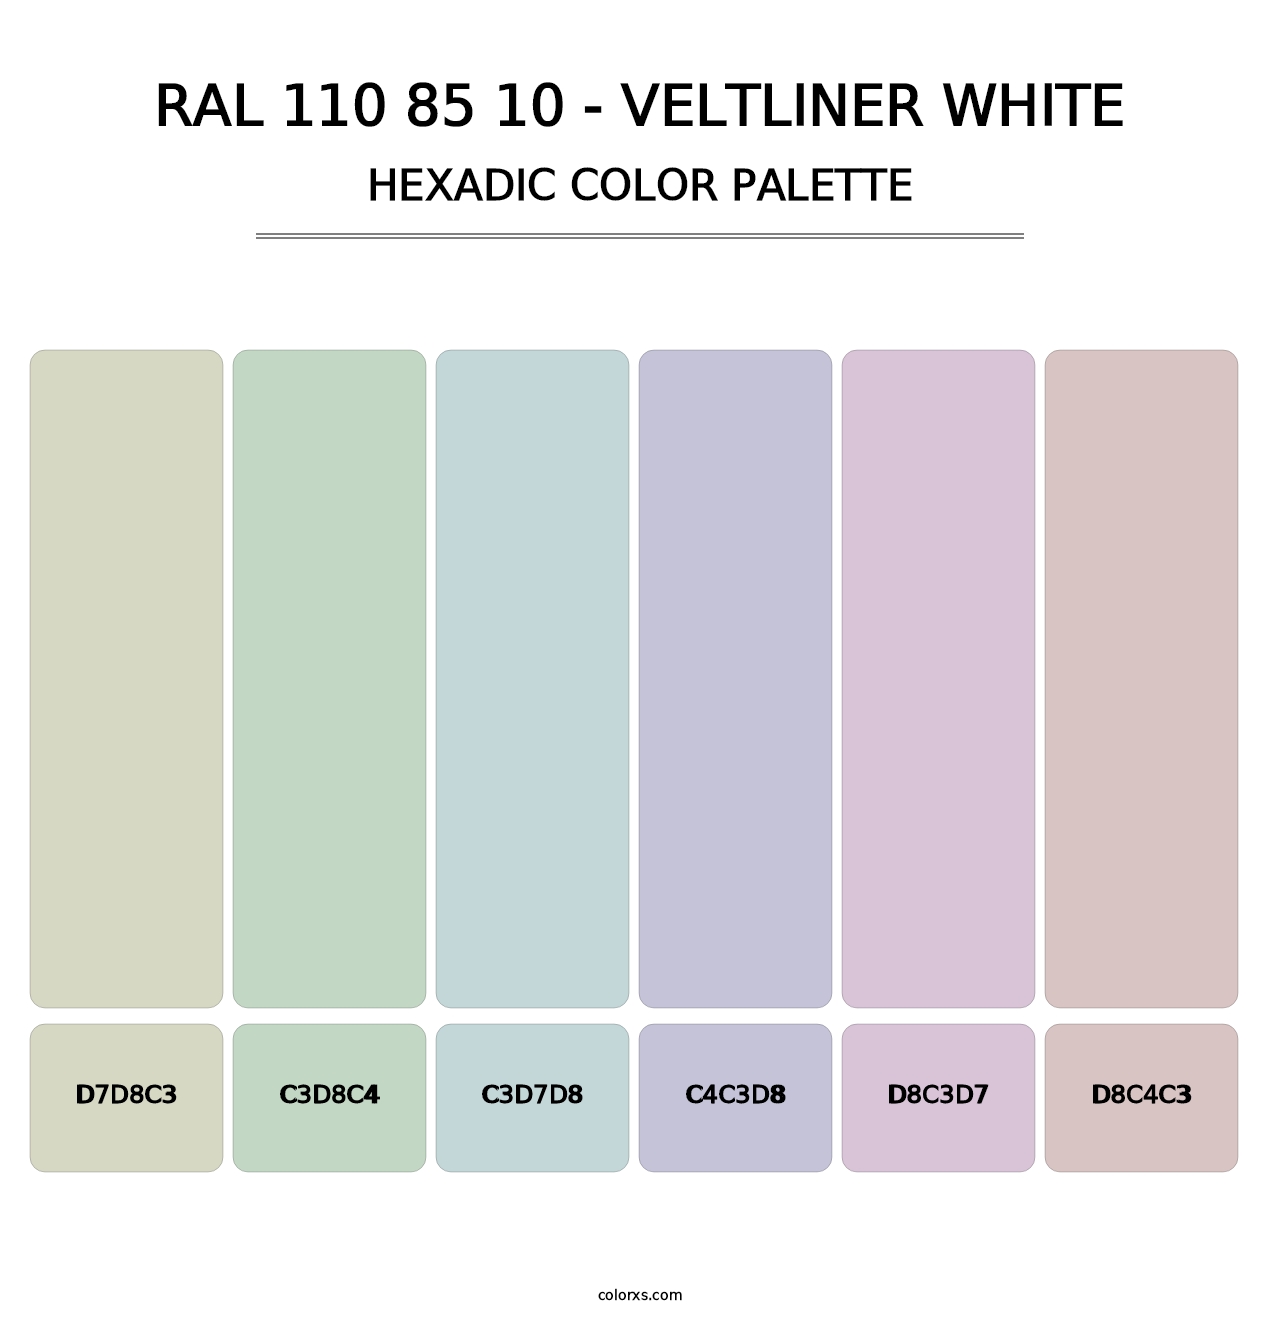 RAL 110 85 10 - Veltliner White - Hexadic Color Palette